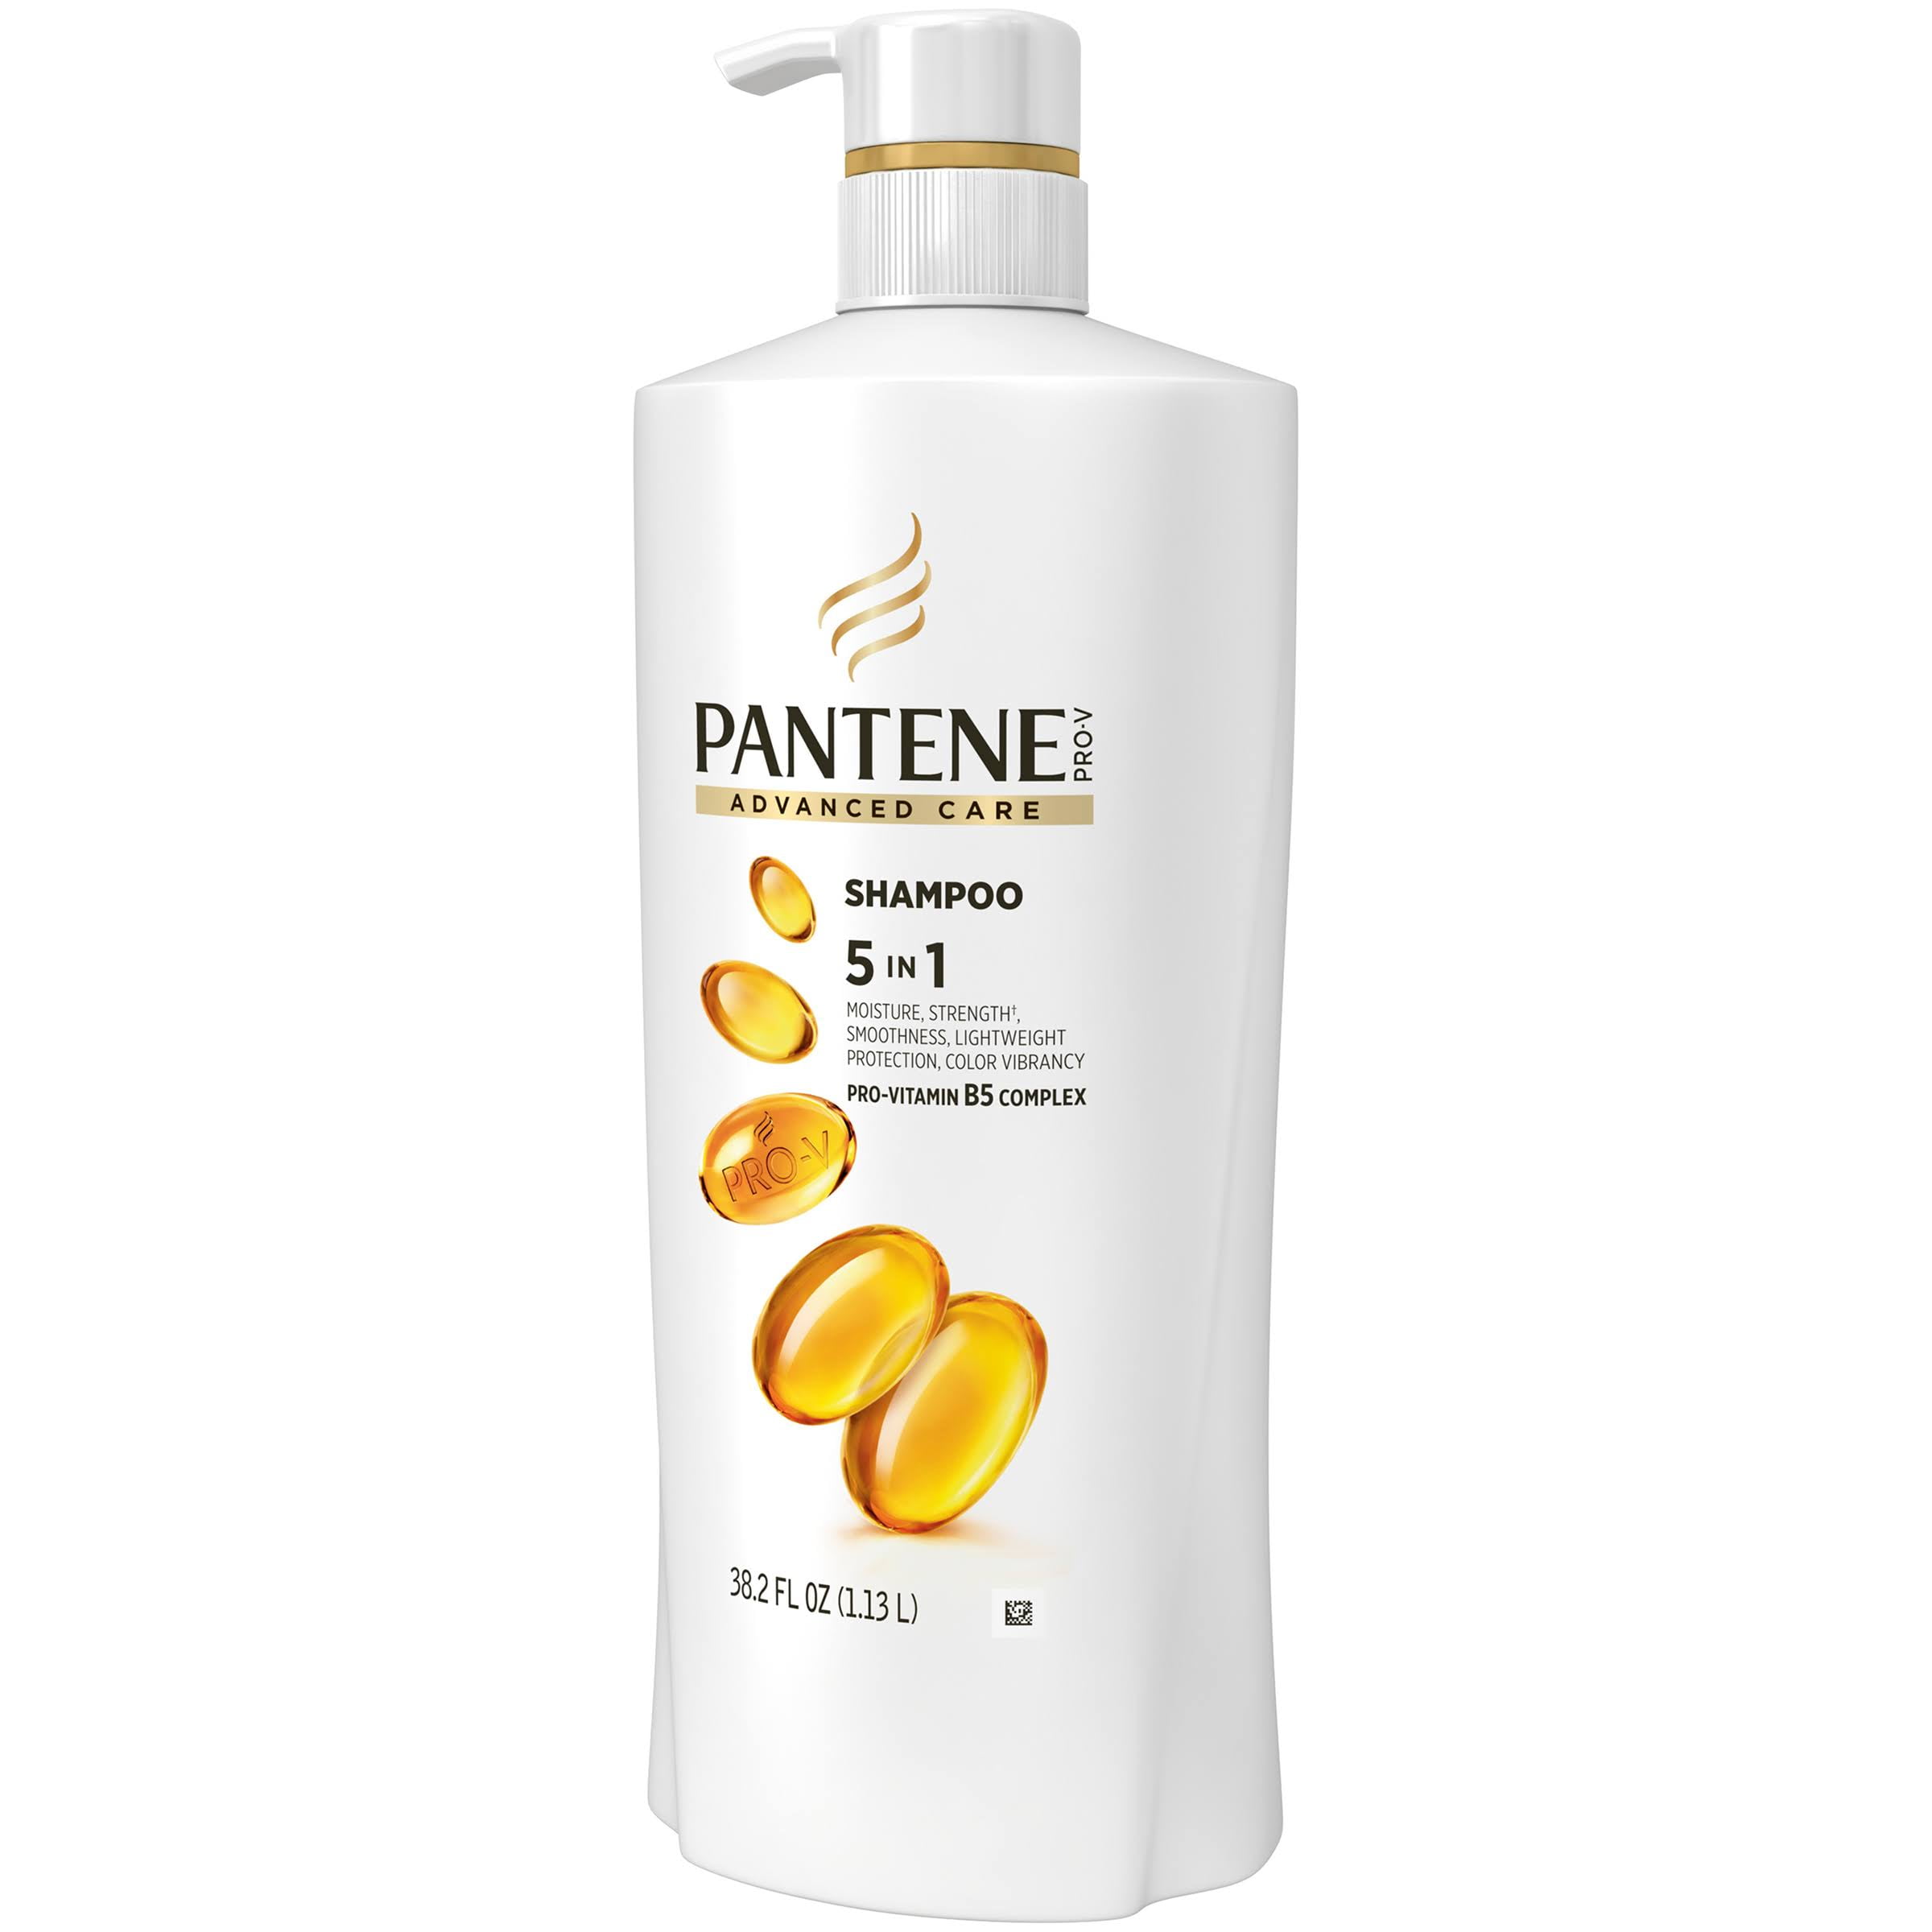 Pantene Advanced Shampoo 5 in 1 Pro Vitamin B5 Complex 38.2 FL OZ - Walmart.com